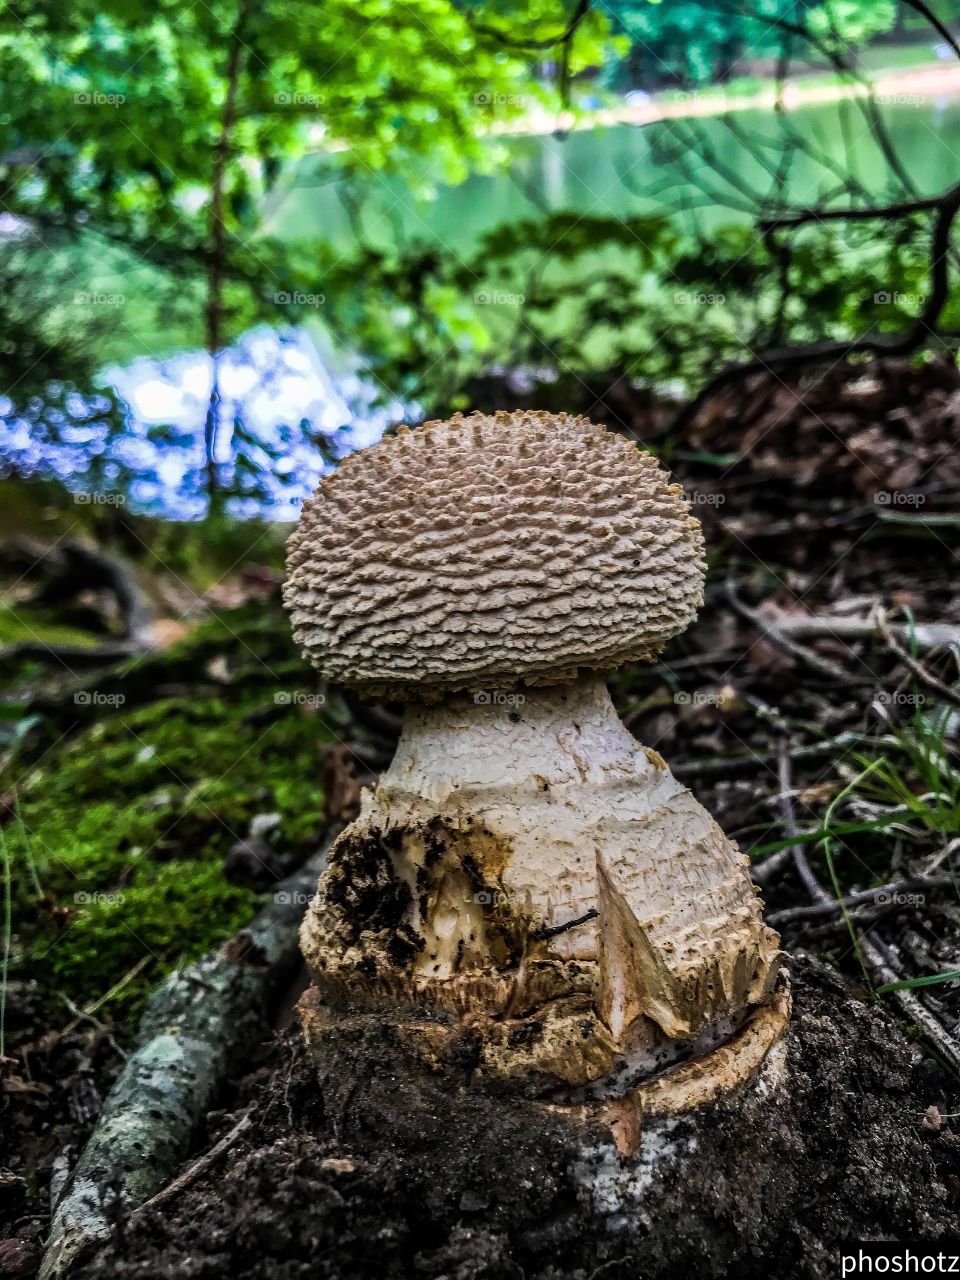 Phoshotz- close-up of large mushroom, summertime,